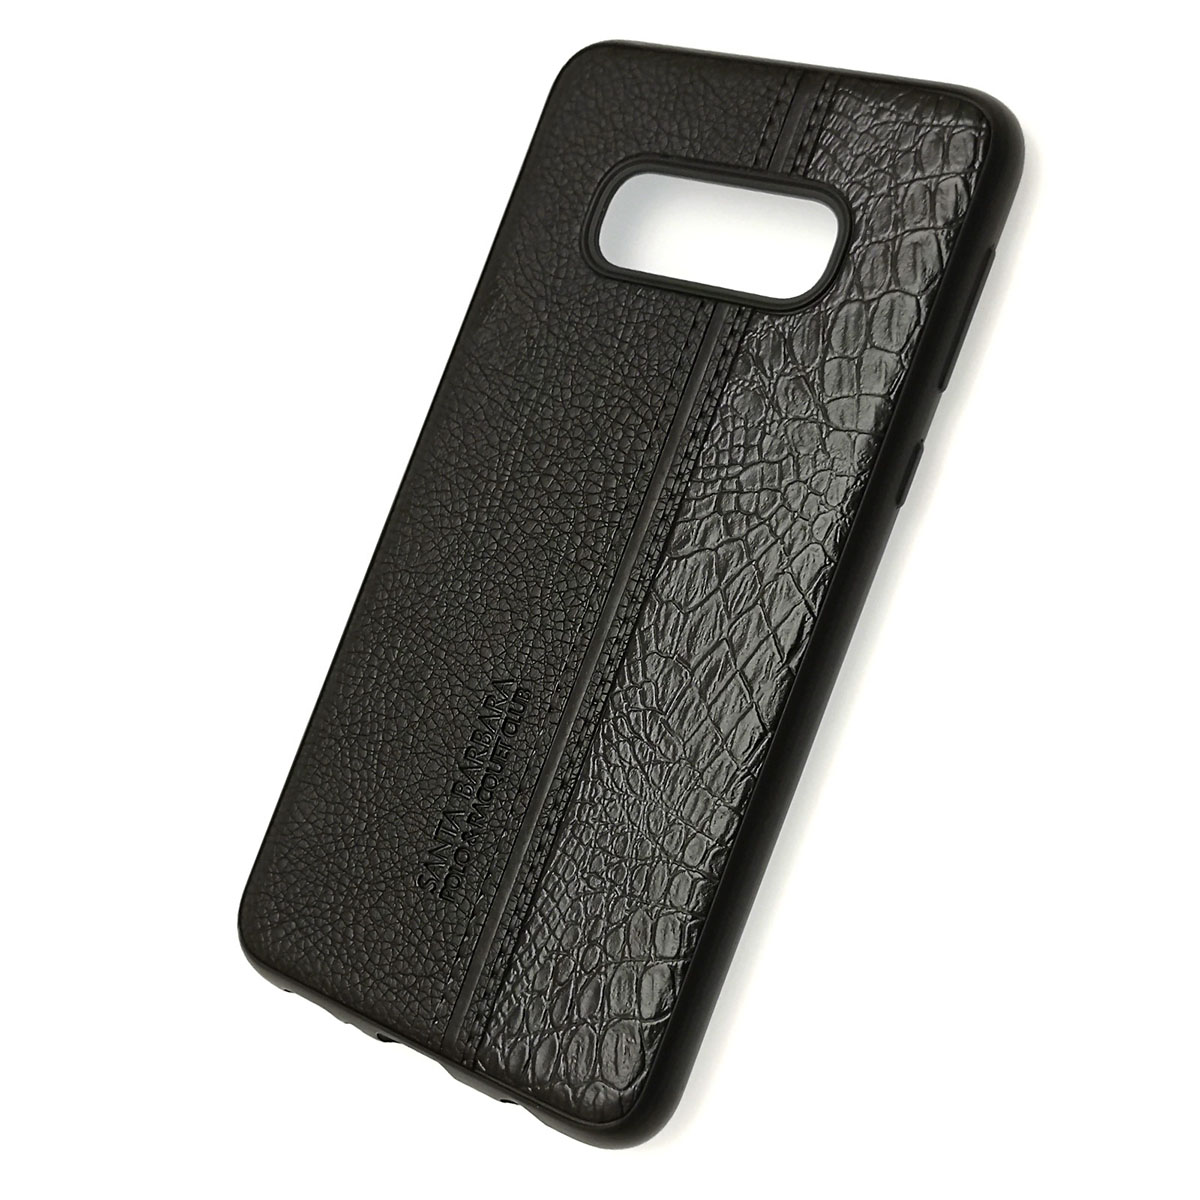 Чехол накладка для SAMSUNG Galaxy S10e (SM-G970), силикон, под кожу, цвет черный.